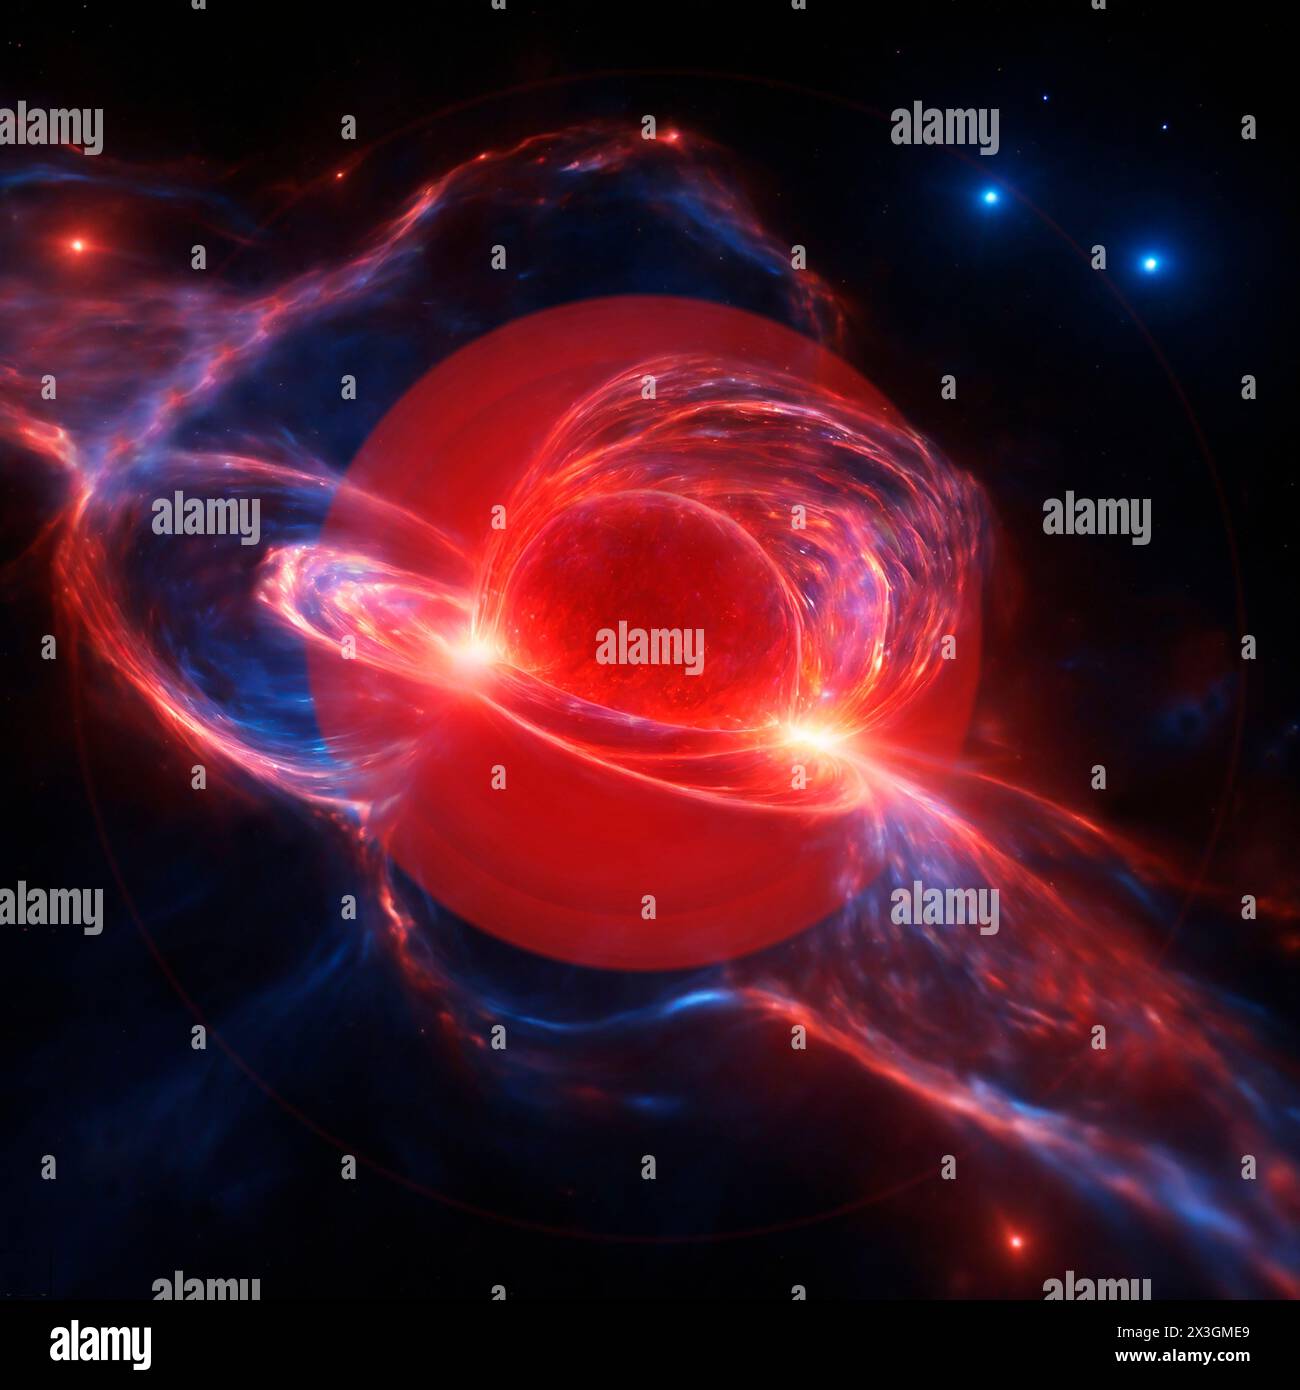 Thorne-Zytkow-Objekt (ZTO), Abbildung. Dies ist ein hypothetischer Stern, der entsteht, wenn ein Neutronenstern und ein roter Riesenstern kollidieren und verschmelzen. Der Neutronenstern bildet den Kern des ZTO. Stockfoto